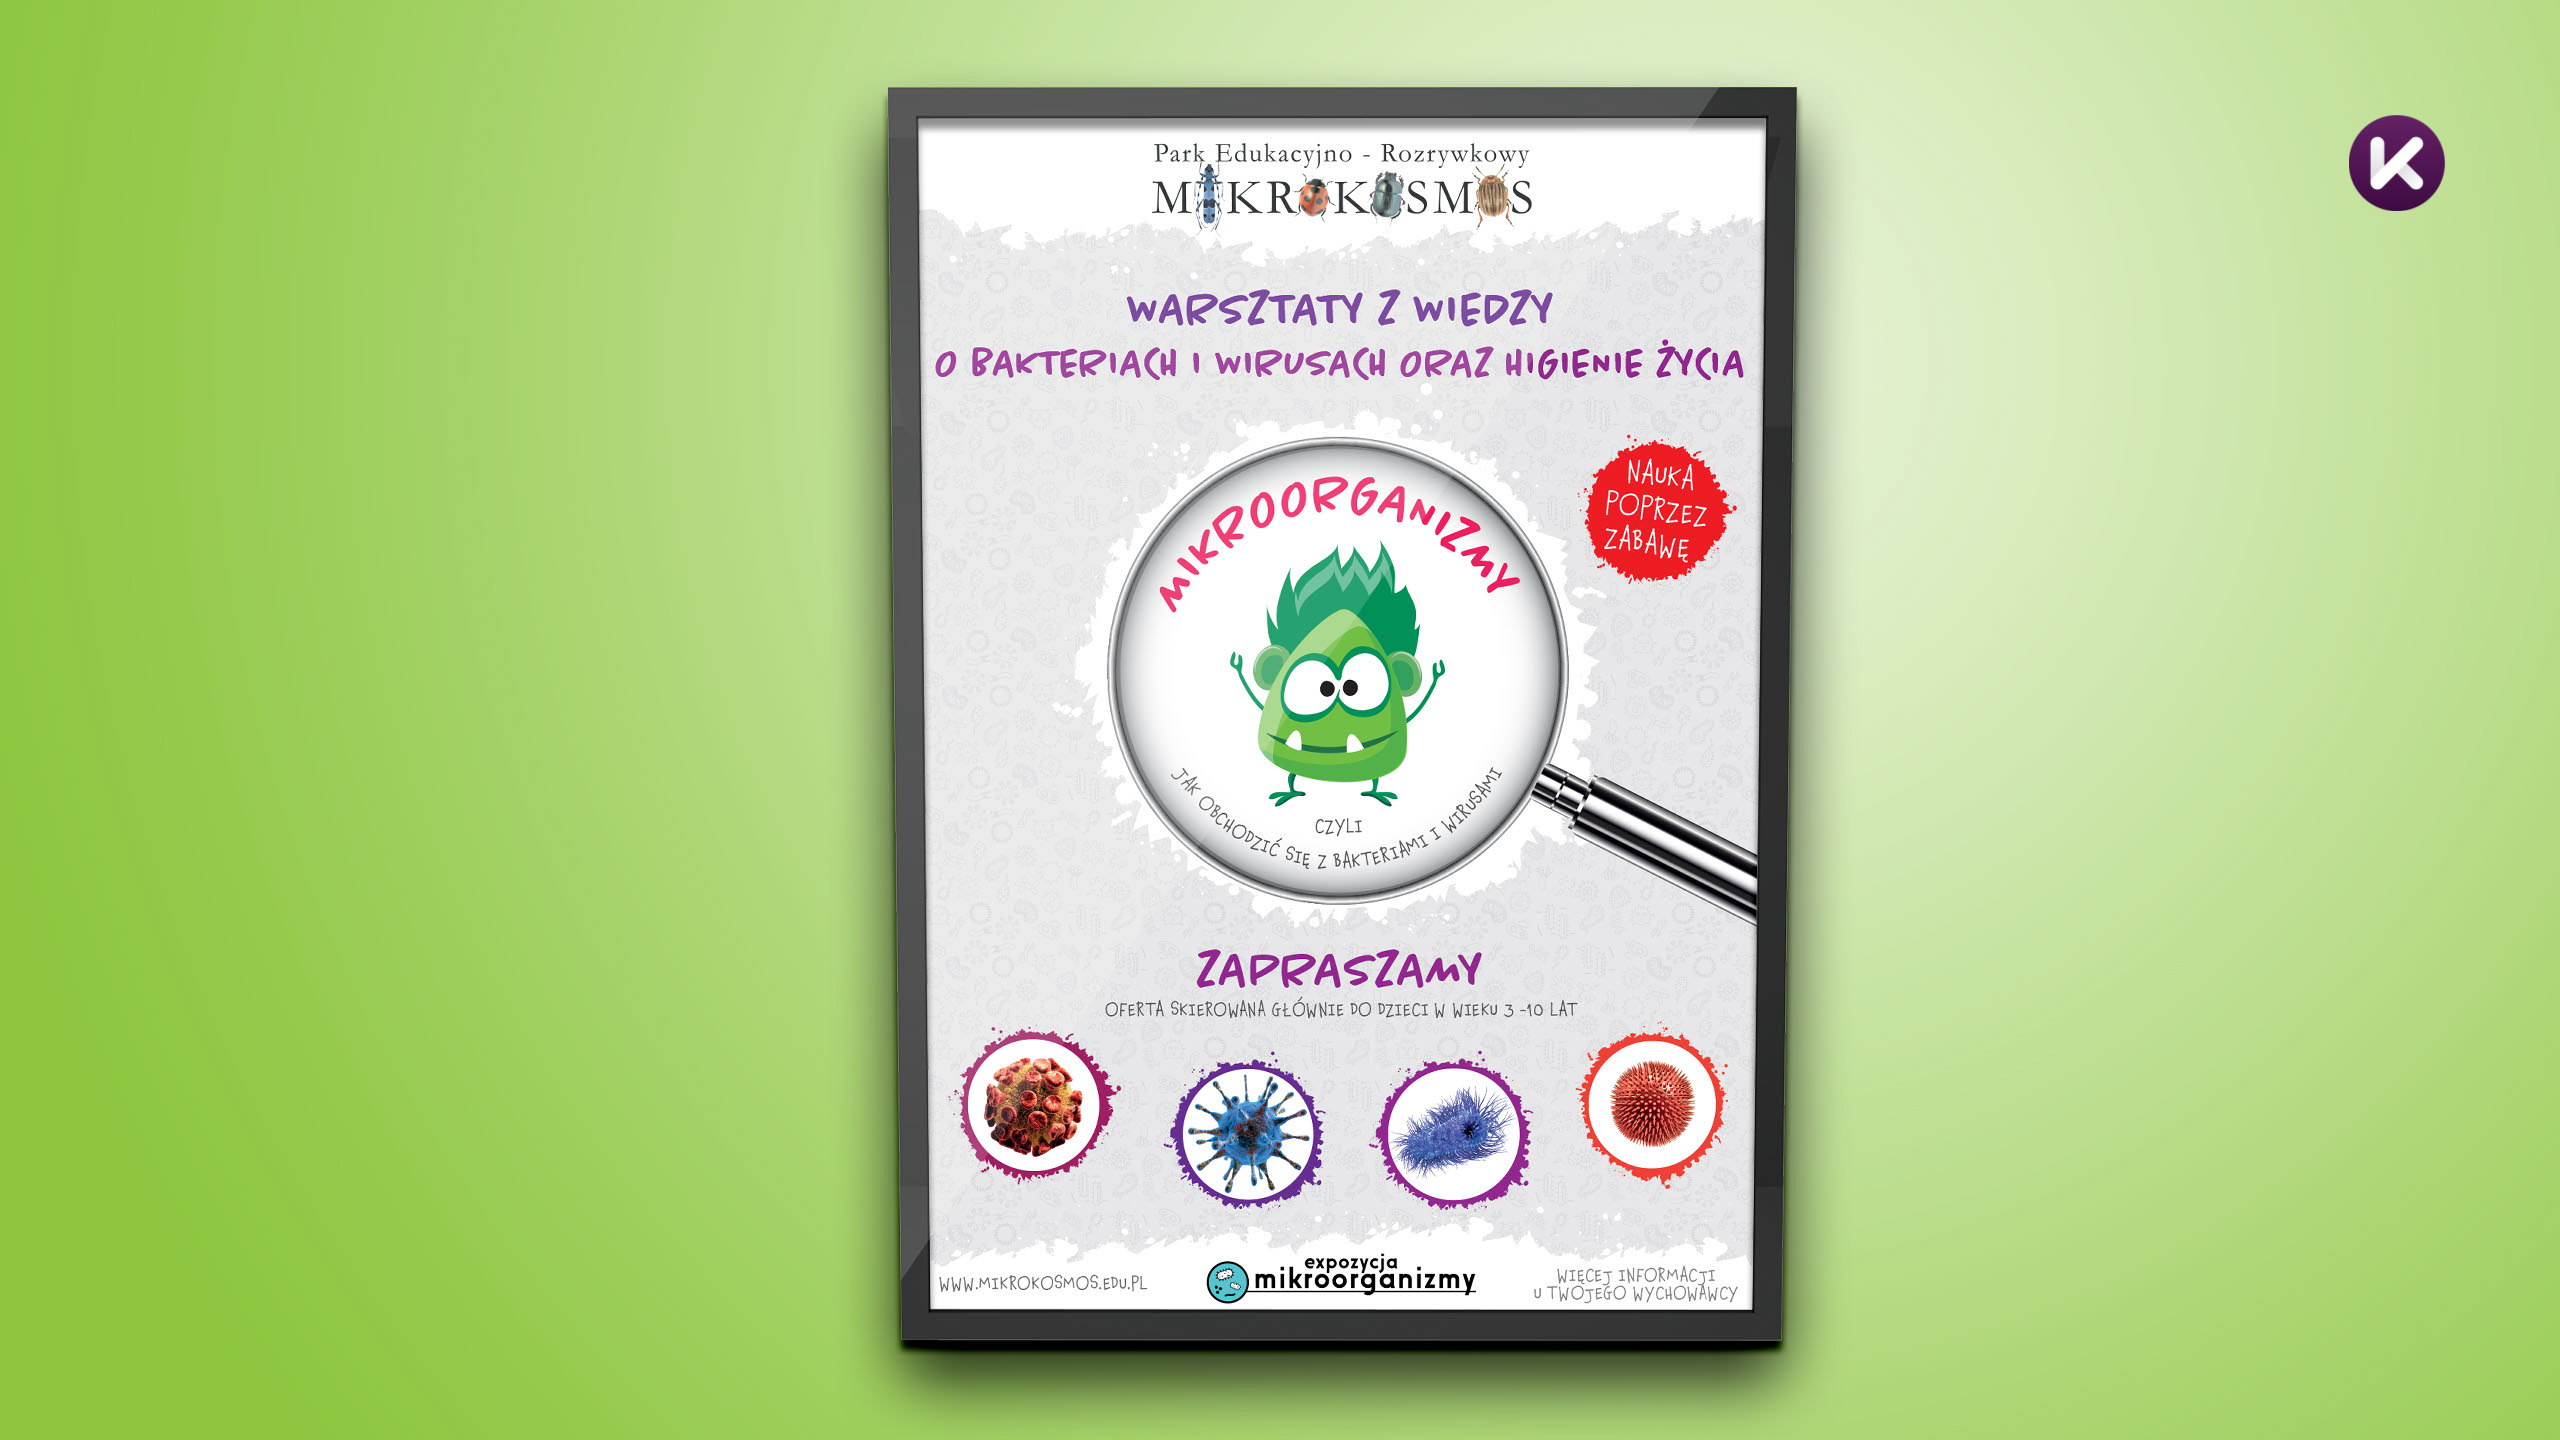 Plakat - Mikrokosmos - Warsztaty z wiedzy o bakteriach i wirusach oraz higienie życia